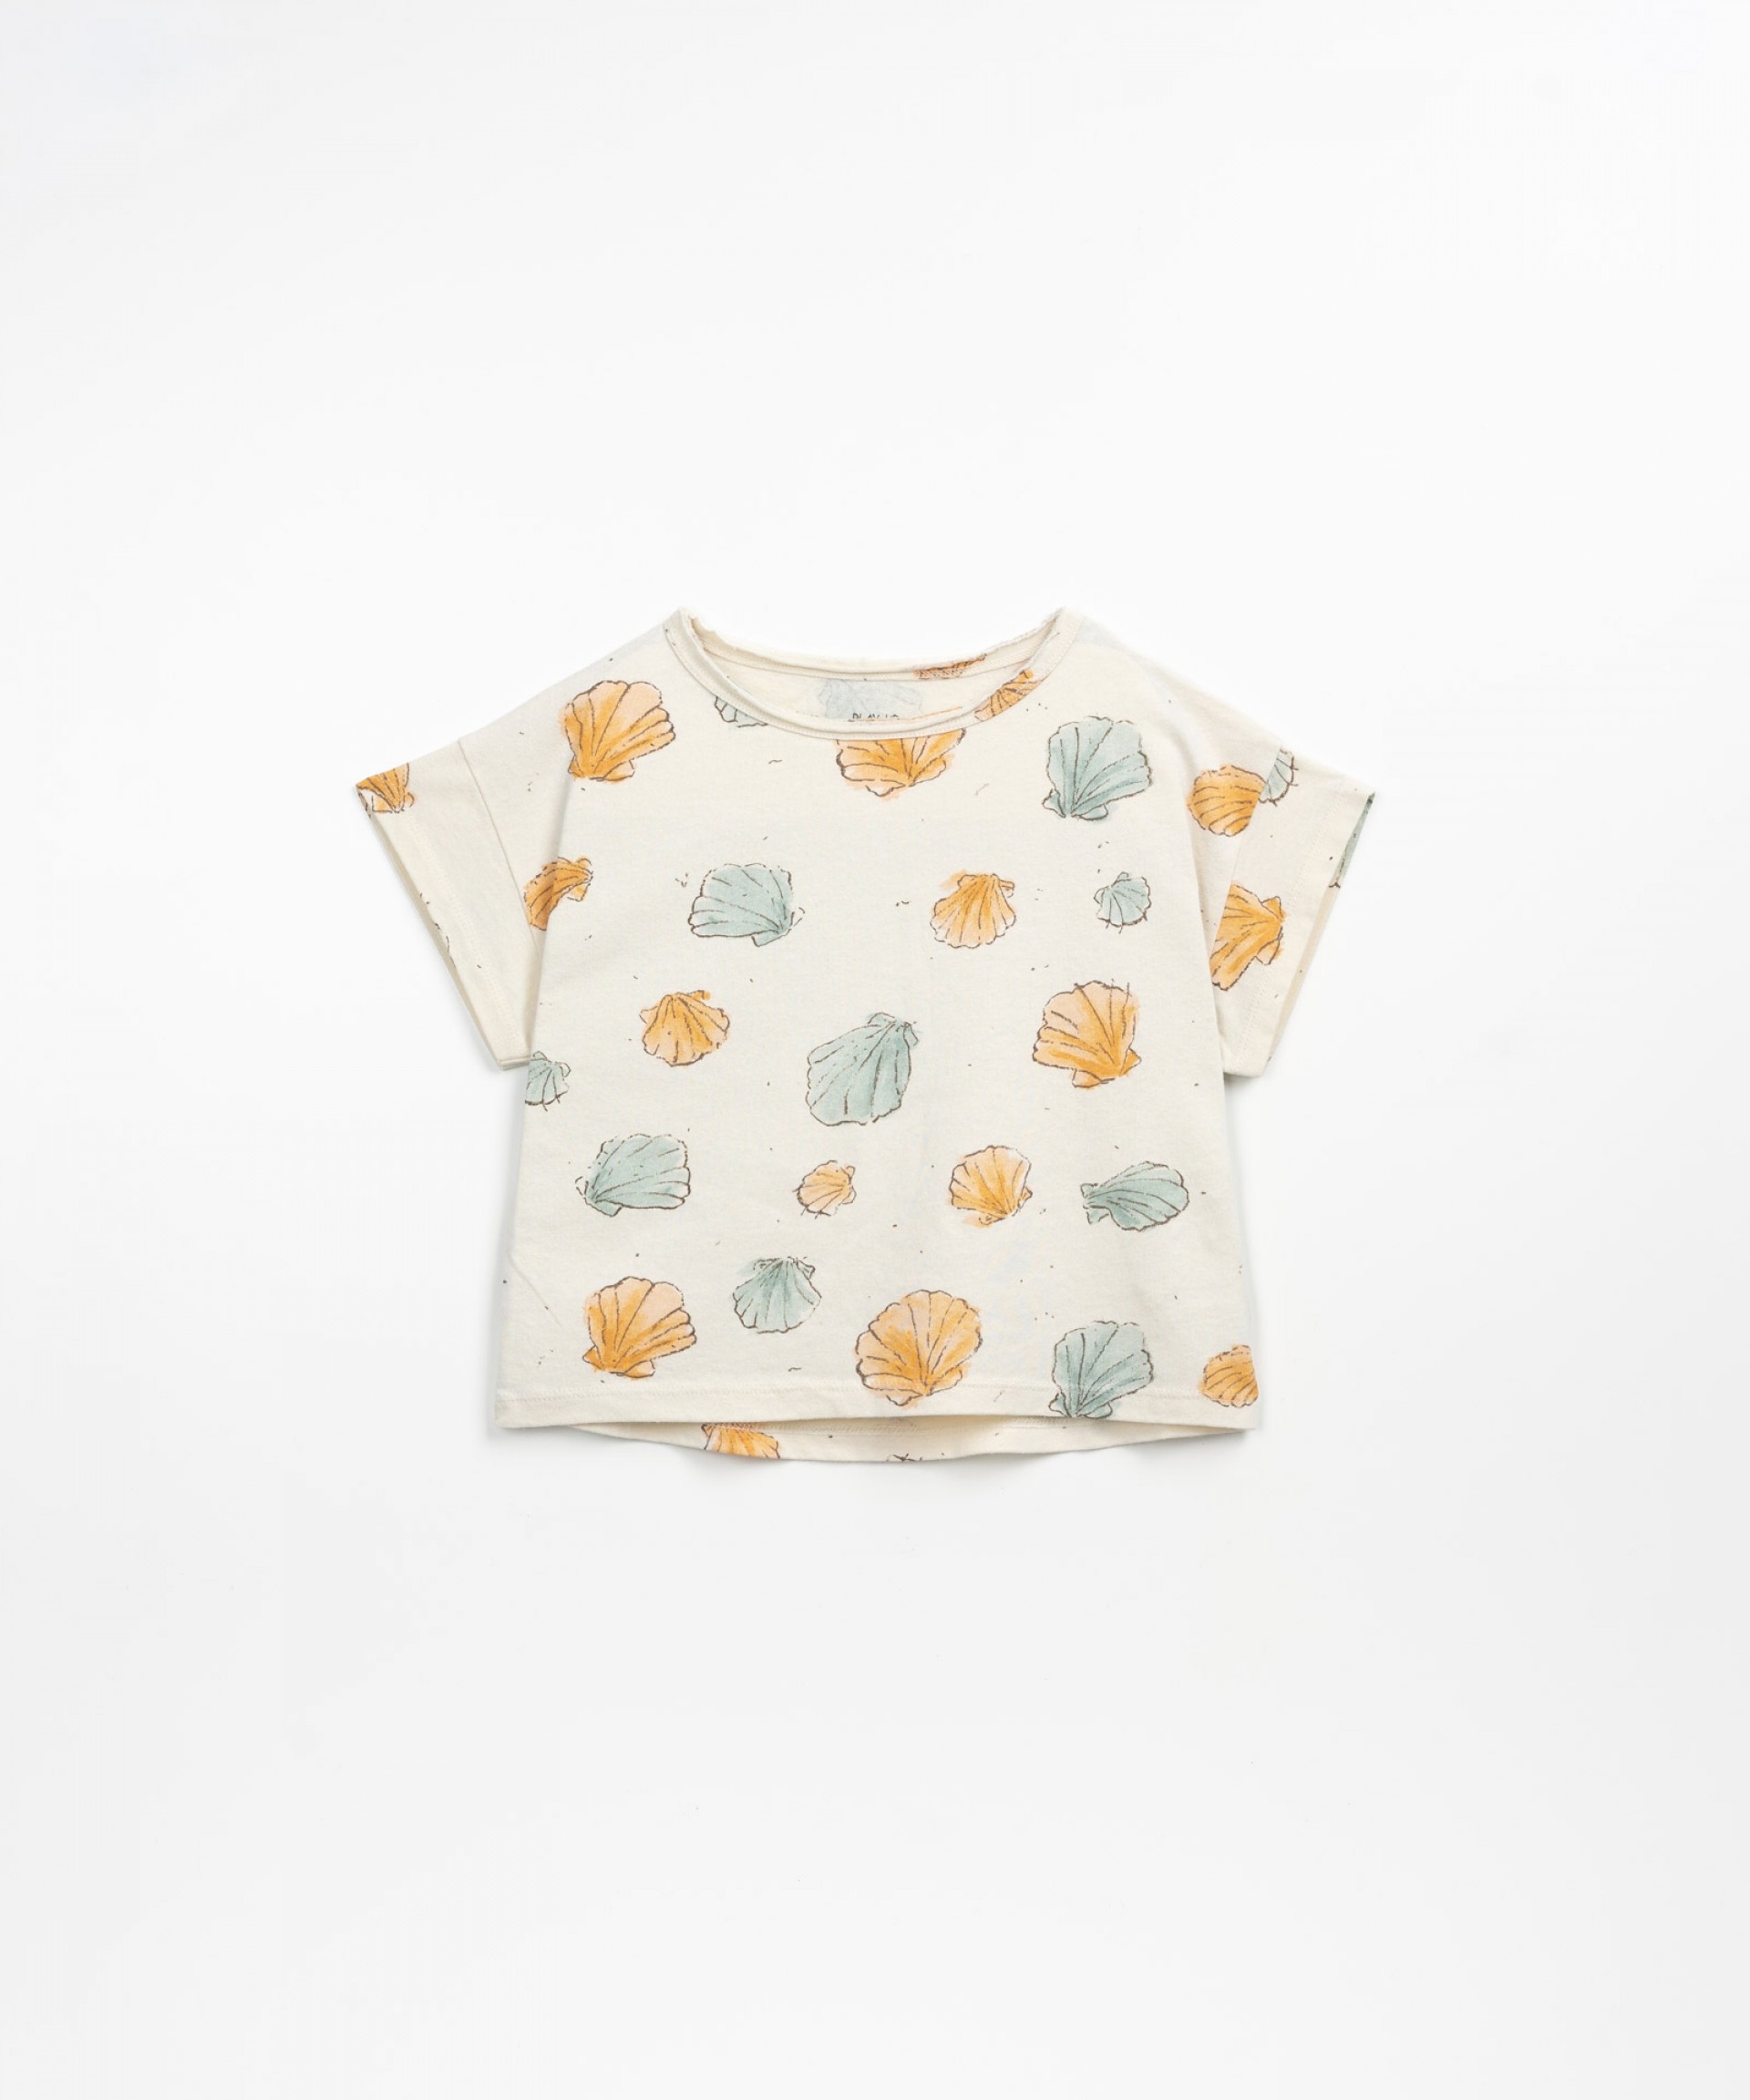 T-shirt mistura de algodo orgnico e algodo reciclado | Textile Art